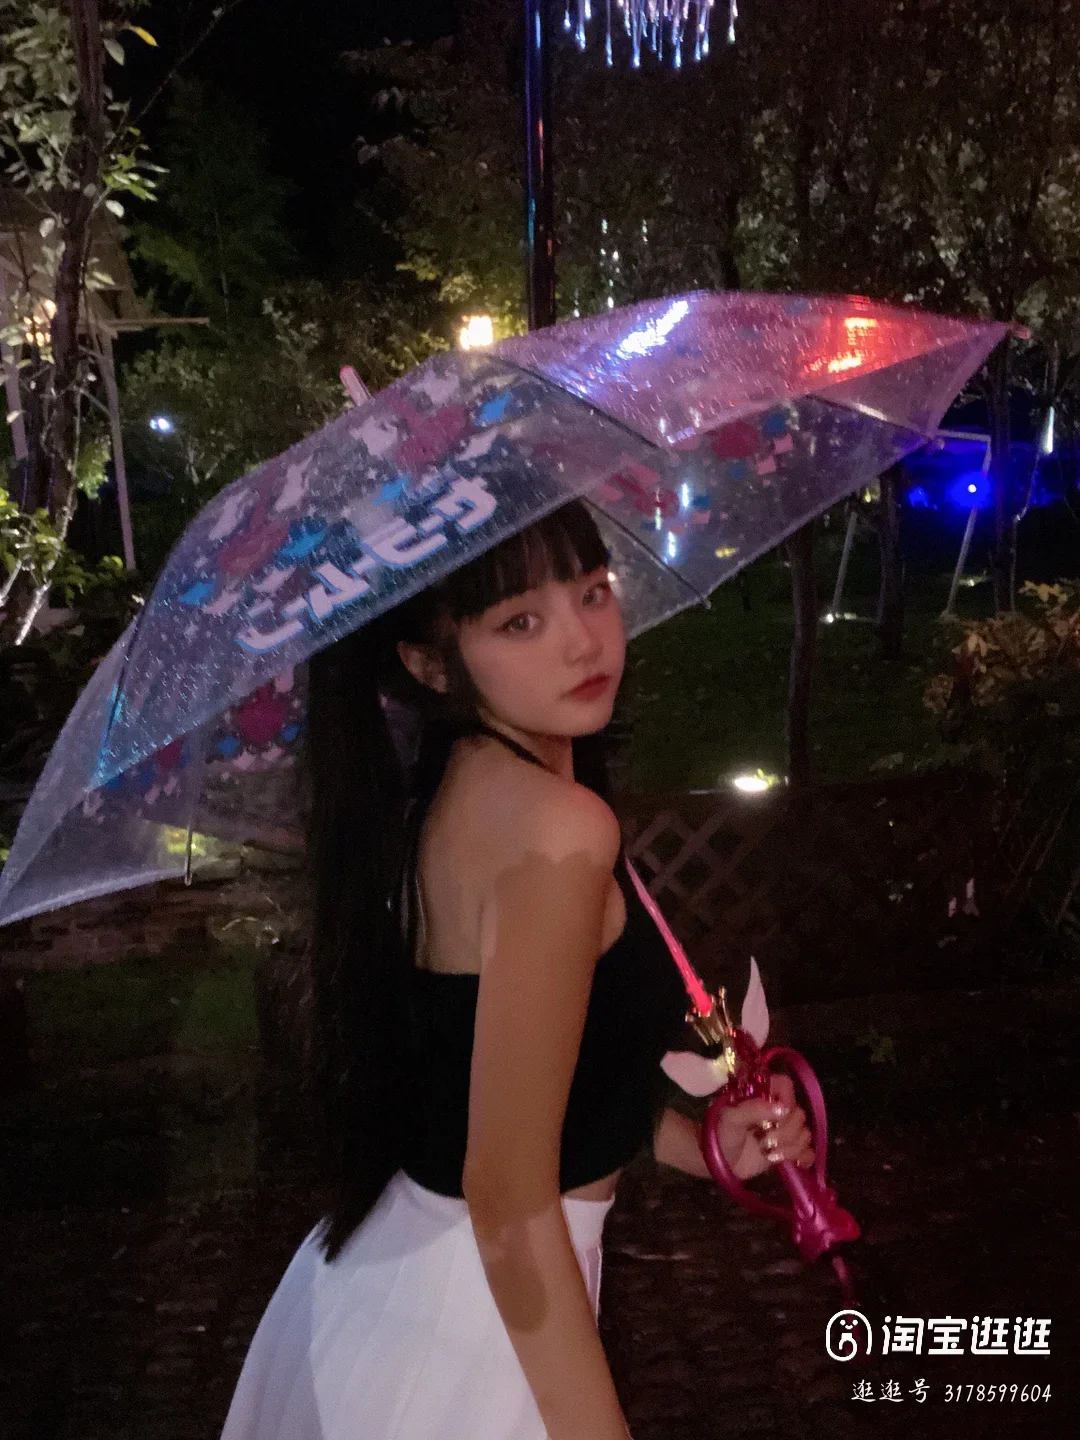 

Аниме "Сейлор Мун", периферийная волшебная палочка, зонт с лунным светом, светодиодный прозрачный зонт, костюм для косплея, реквизит для представлений, Подарочные игрушки